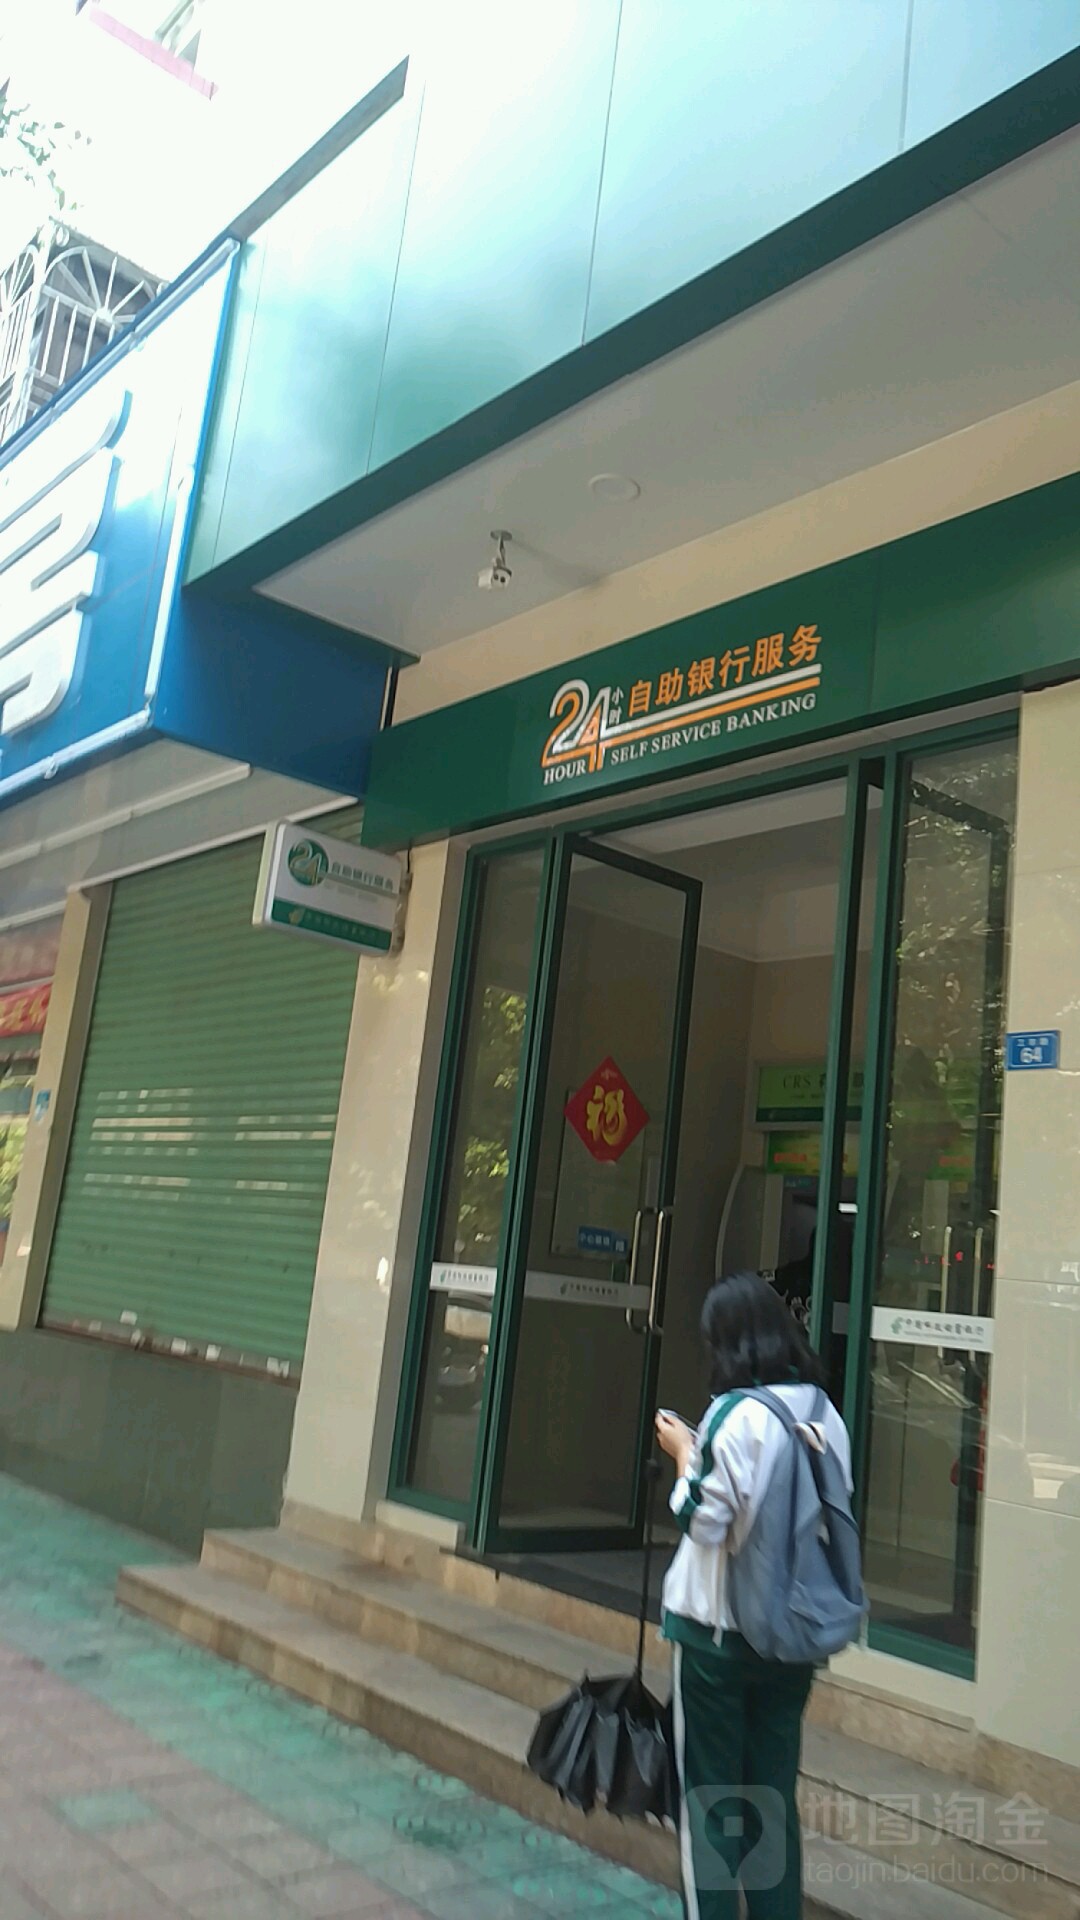 中國郵政儲蓄銀行ATM(大埔縣支行)